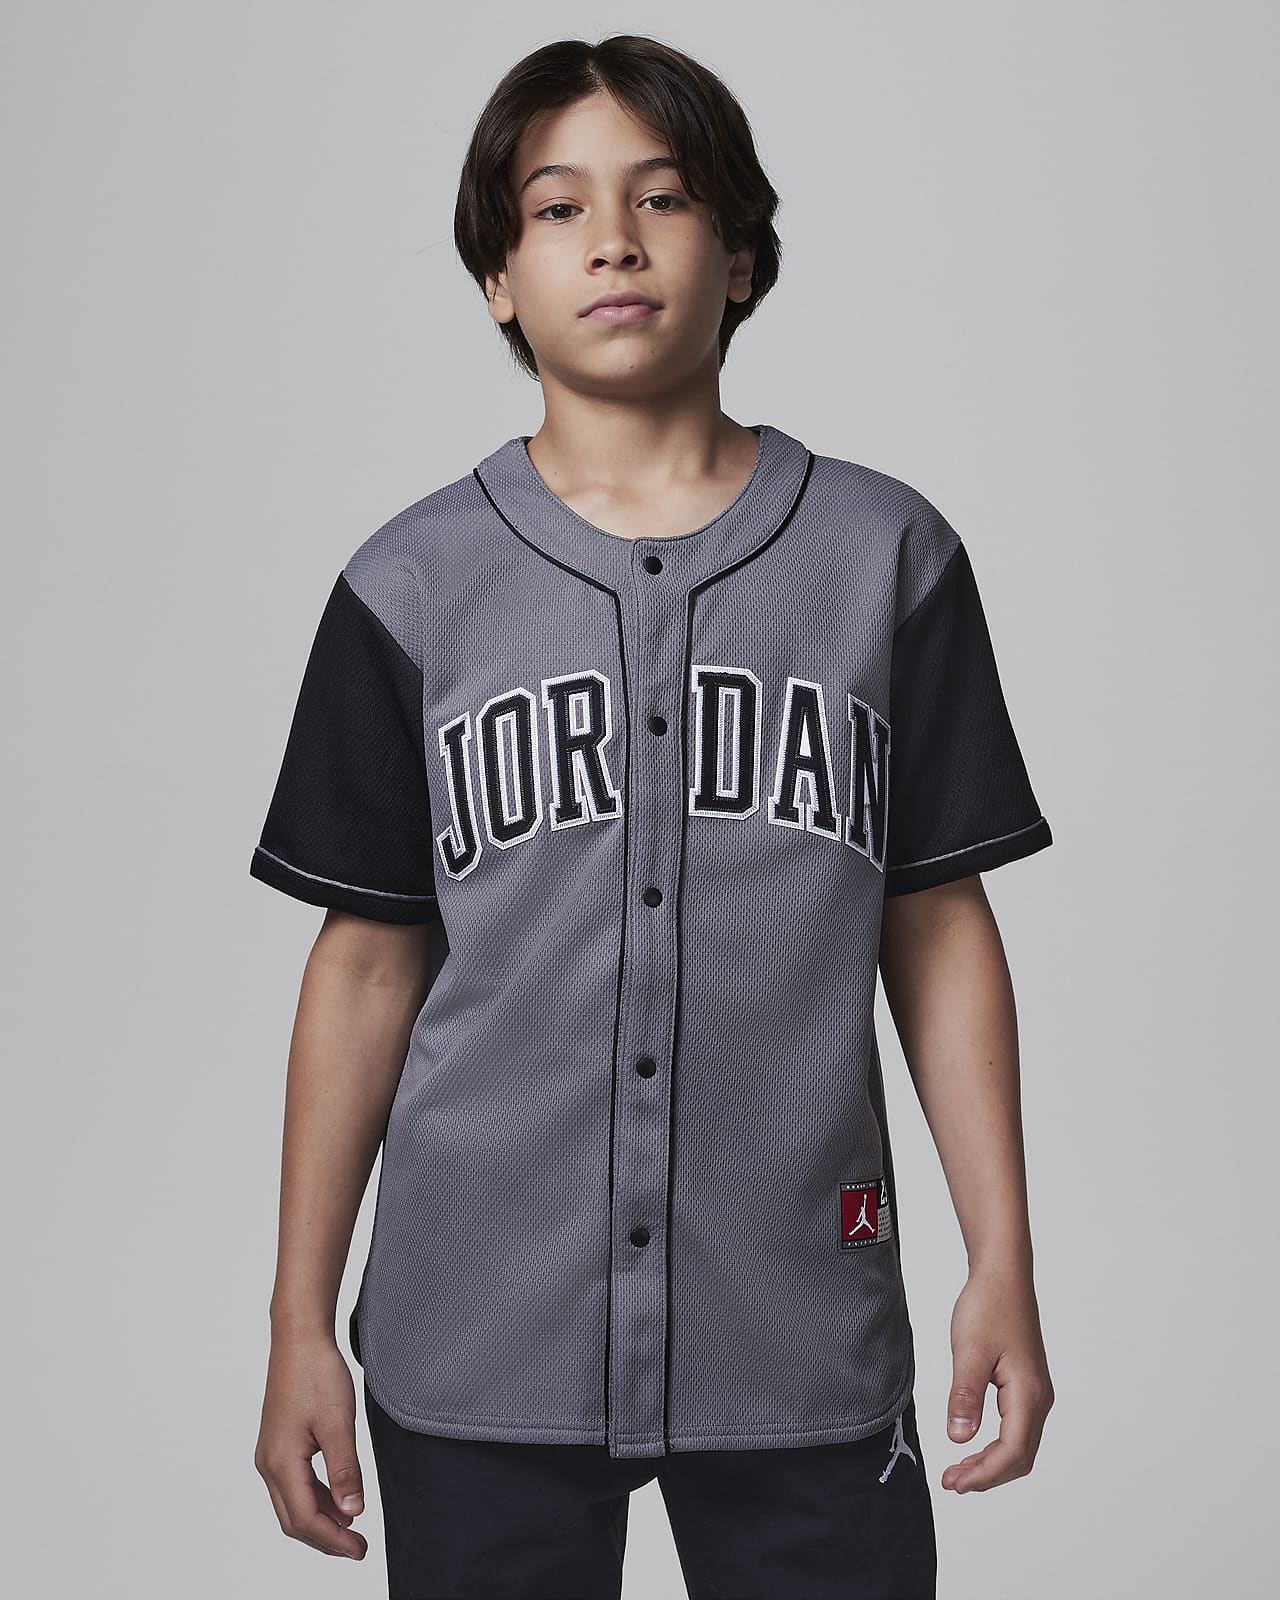 Baseballový dres Jordan pro větší děti